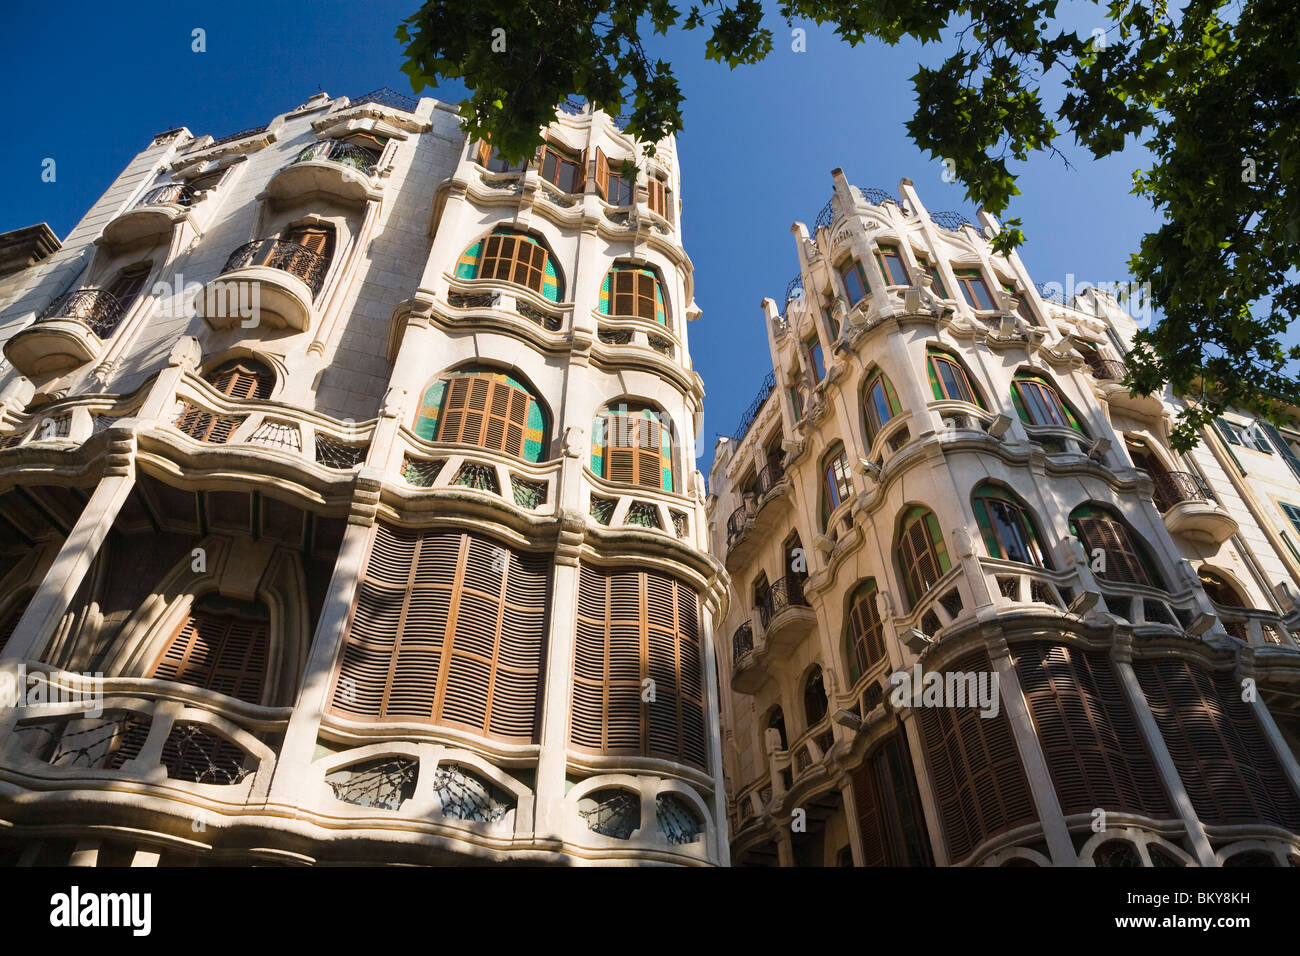 Fassaden von Wohnhäusern im Sonnenlicht, Placa del Mercat, Palma, Mallorca, Spanien, Europa Stockfoto